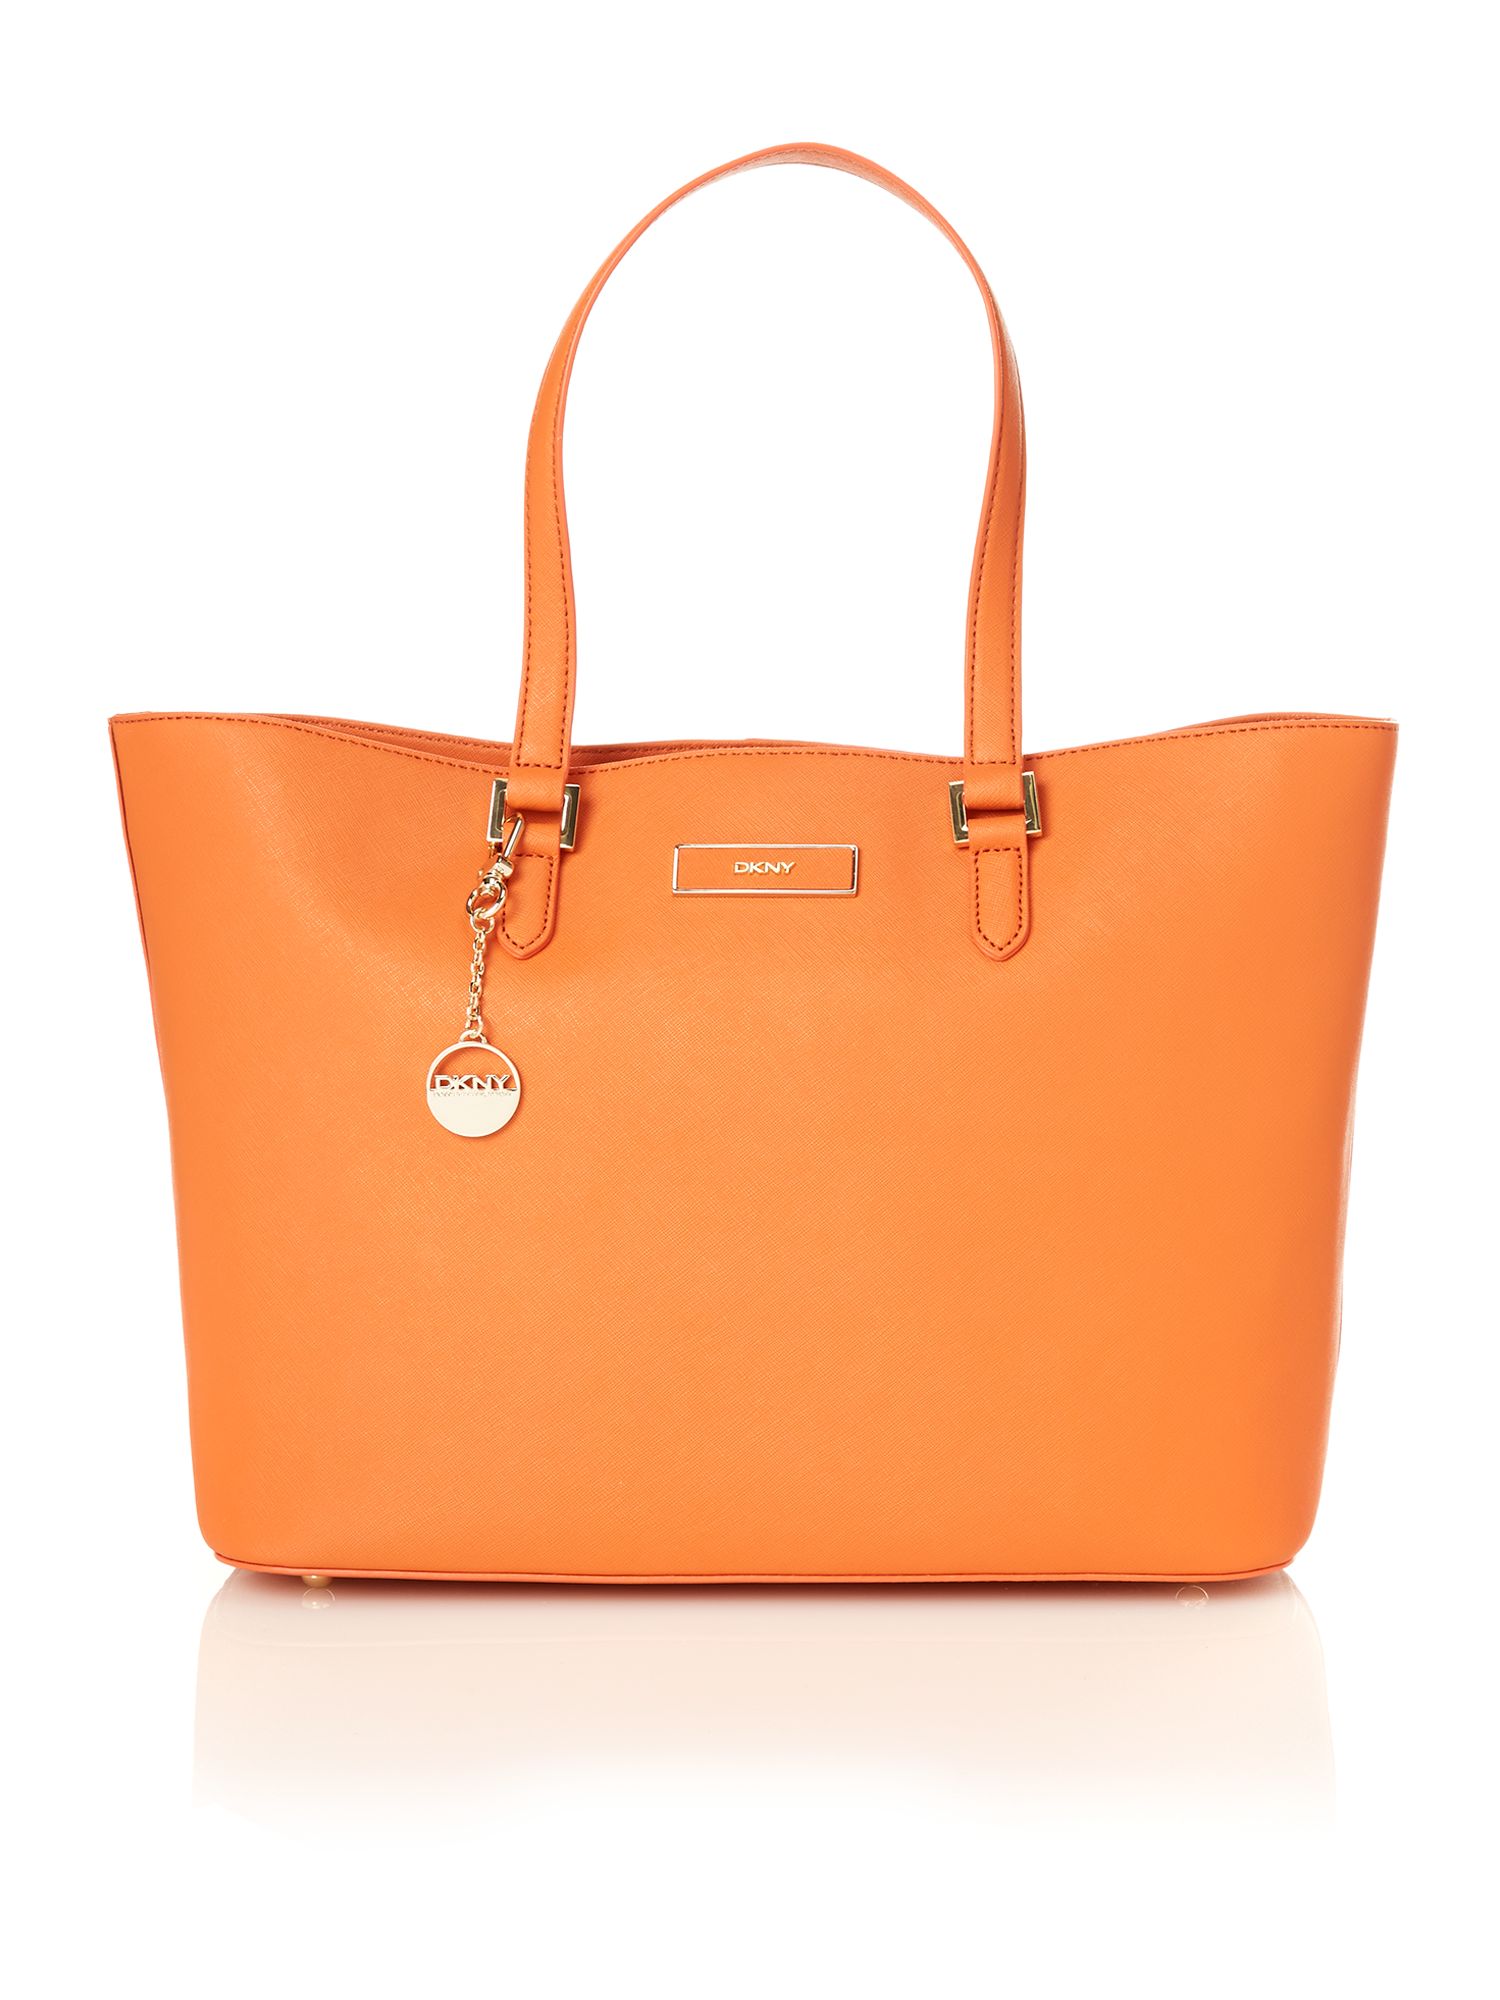 Dkny Orange Tote Bag in Orange | Lyst